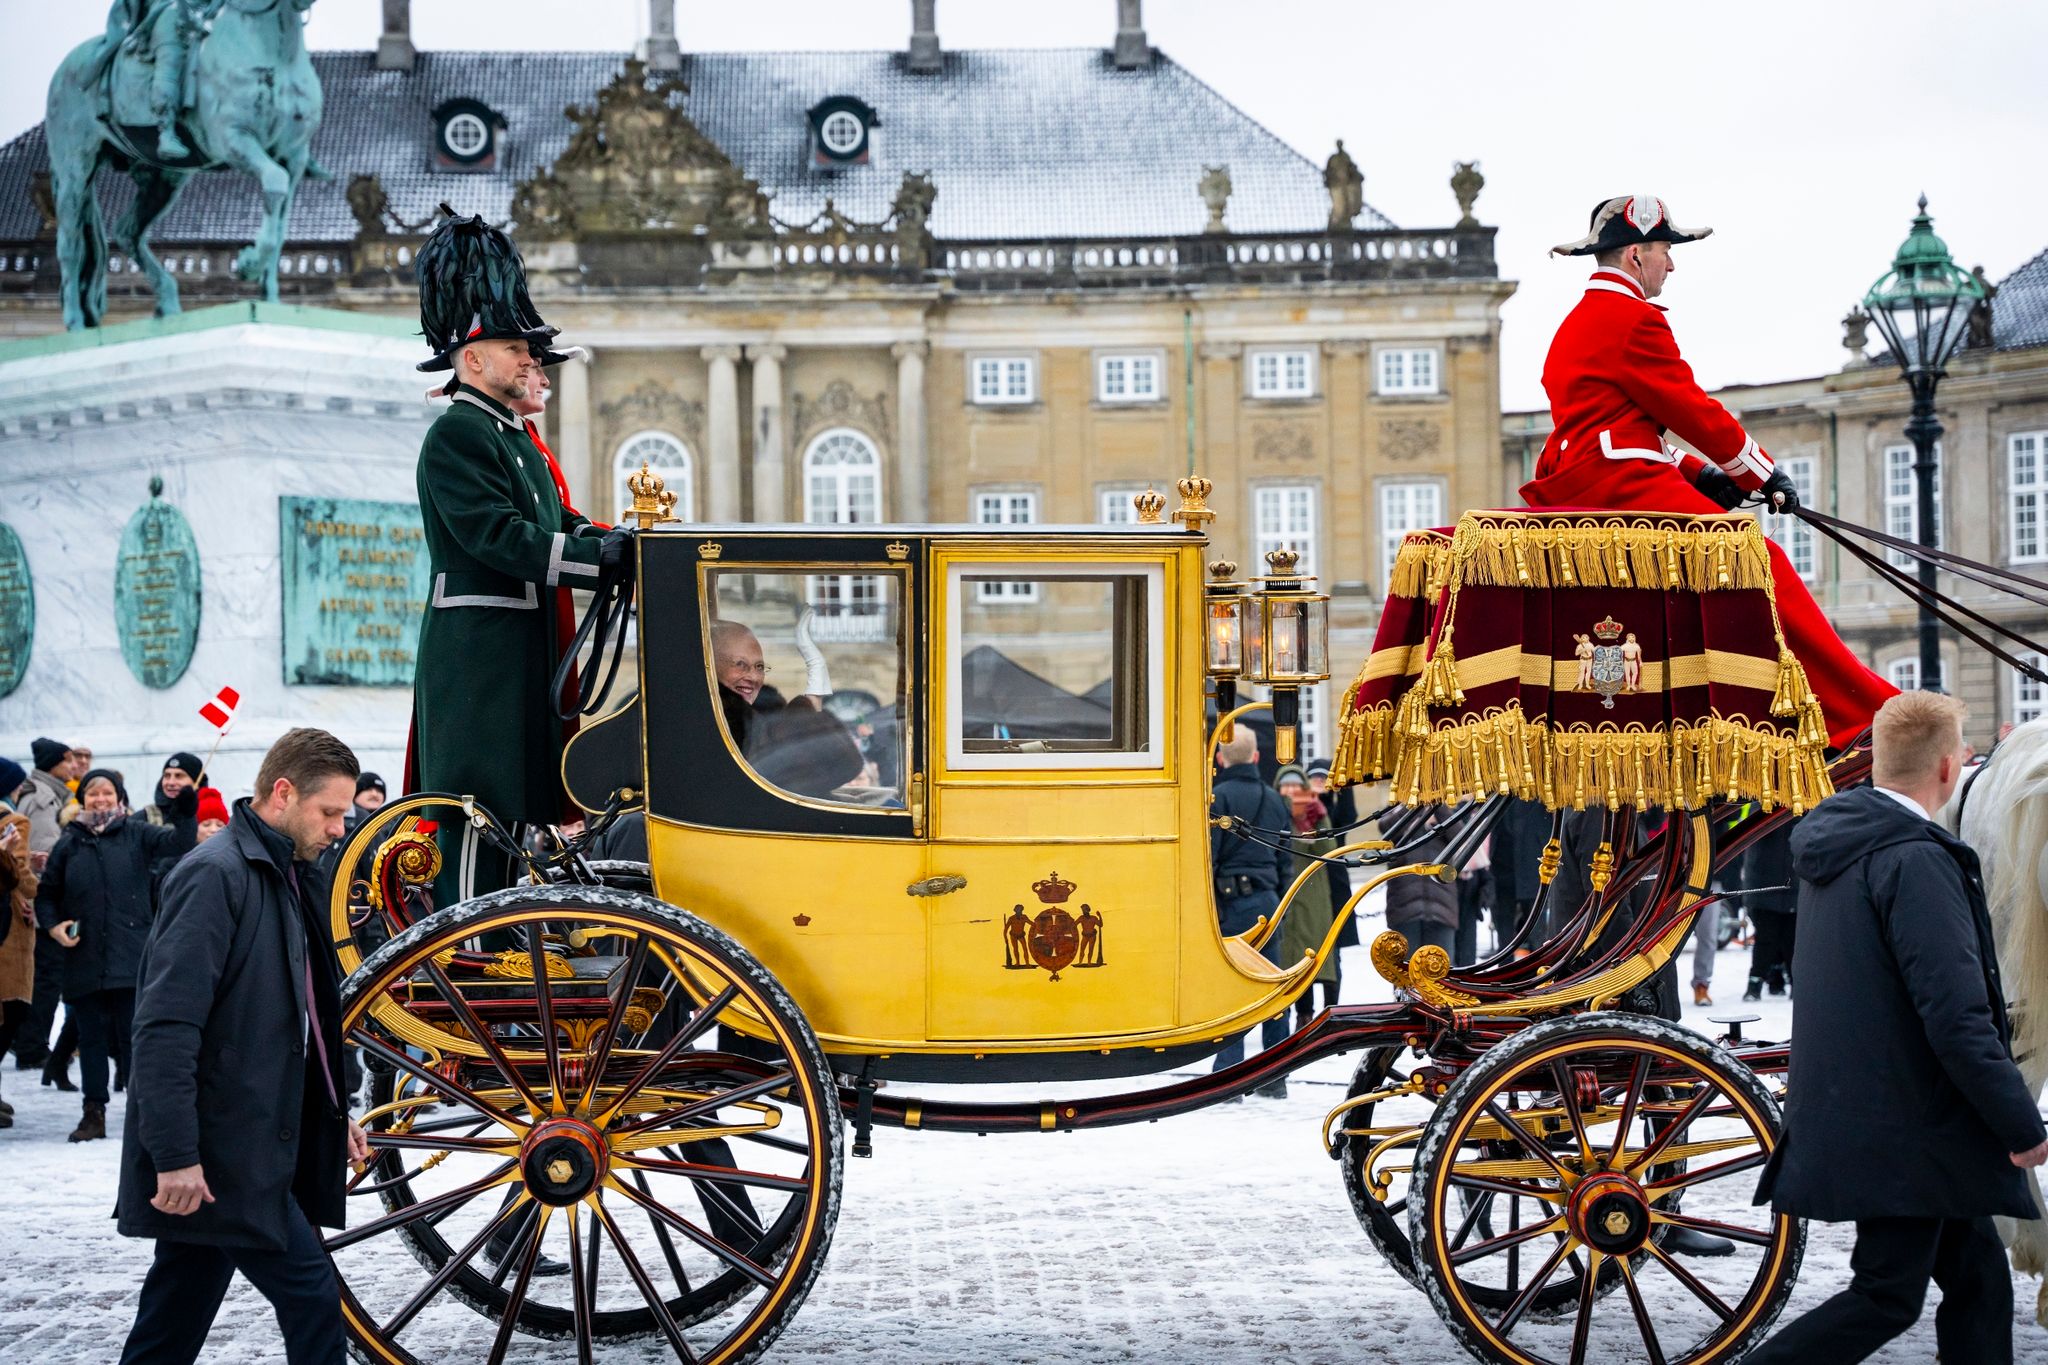 Dänemarks Königin Margrethe II. winkt, während sie in einer Pferdekutsche zum Schloss Christiansborg fährt - wo bald der Thronwechsel vollzogen wird.